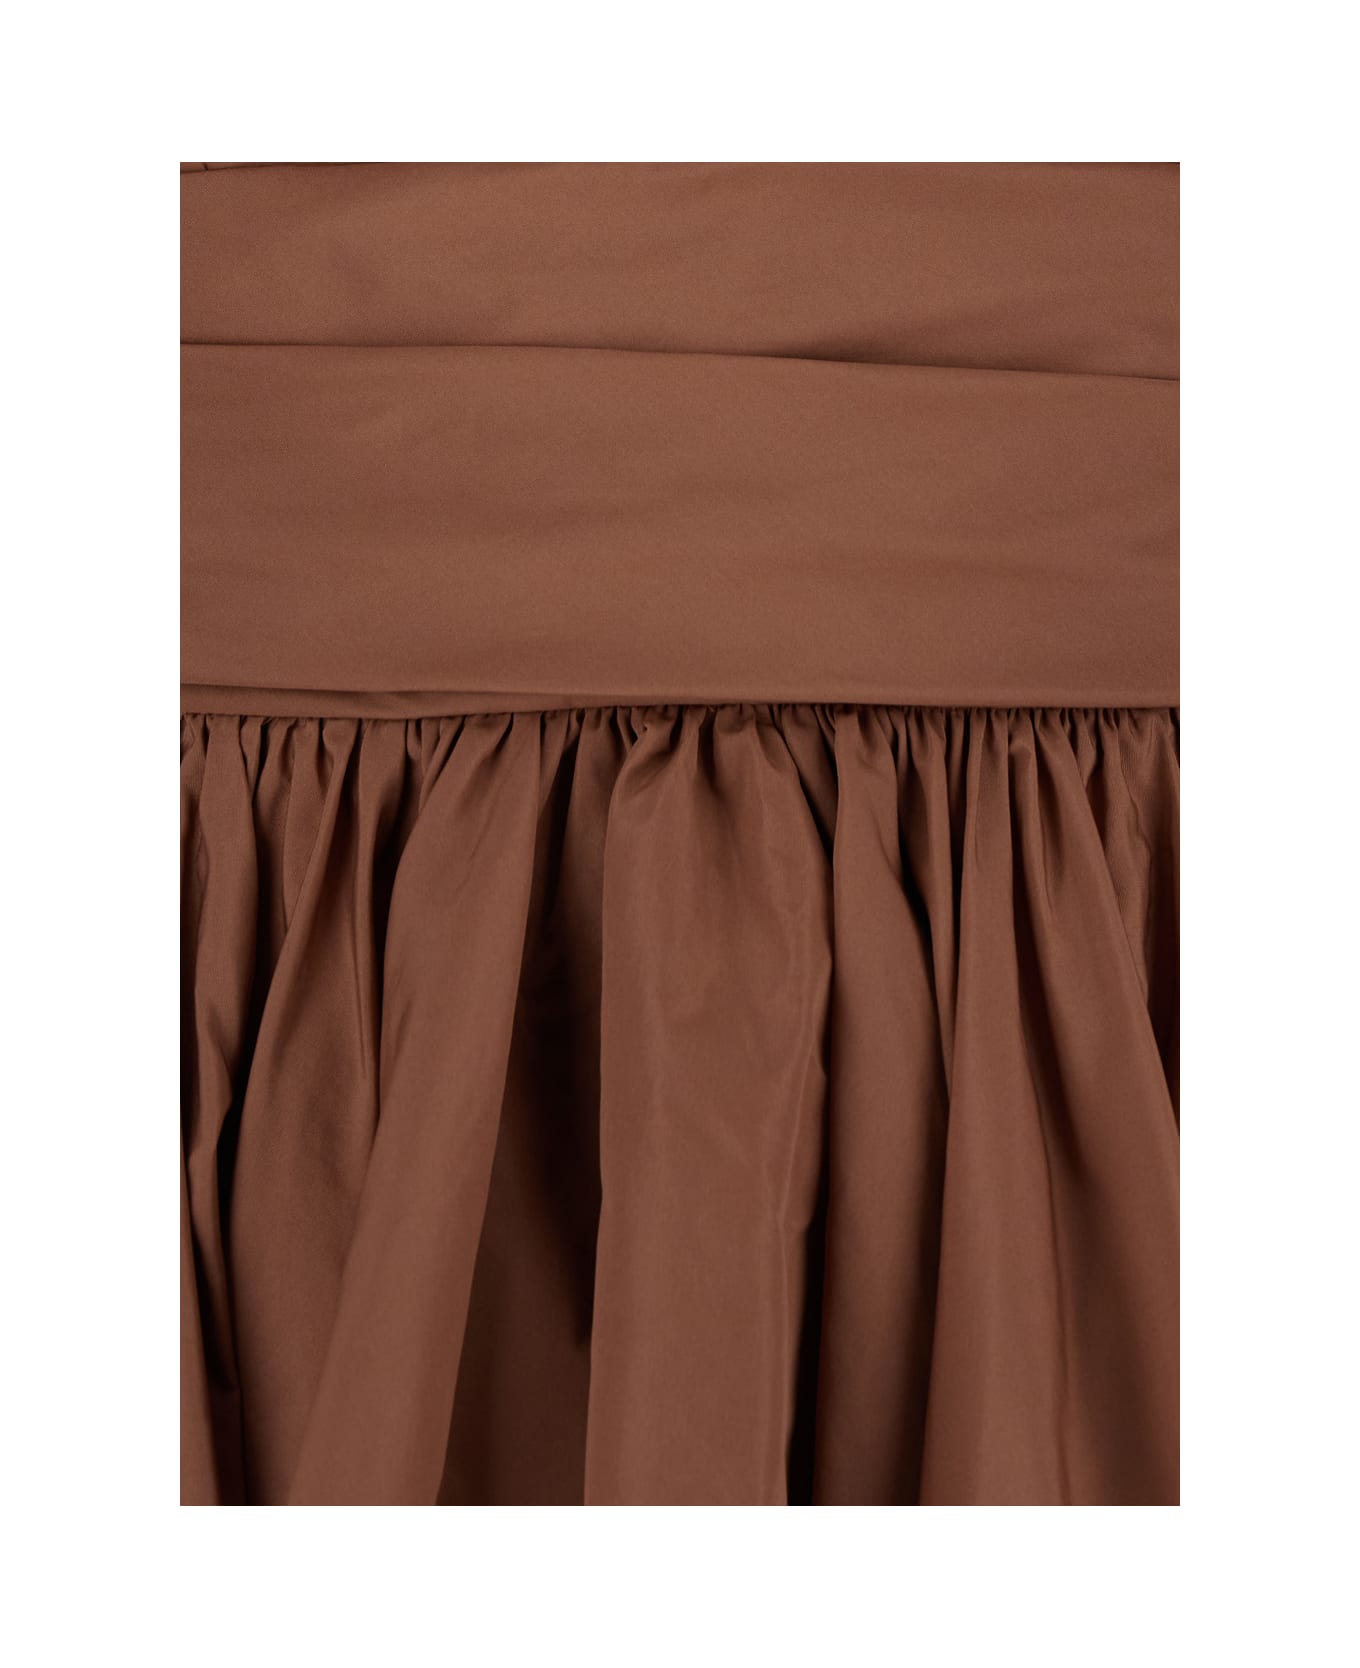 Pinko Brown Sleeveless Mini Dress With Pinces In Taffetà Woman - Brown